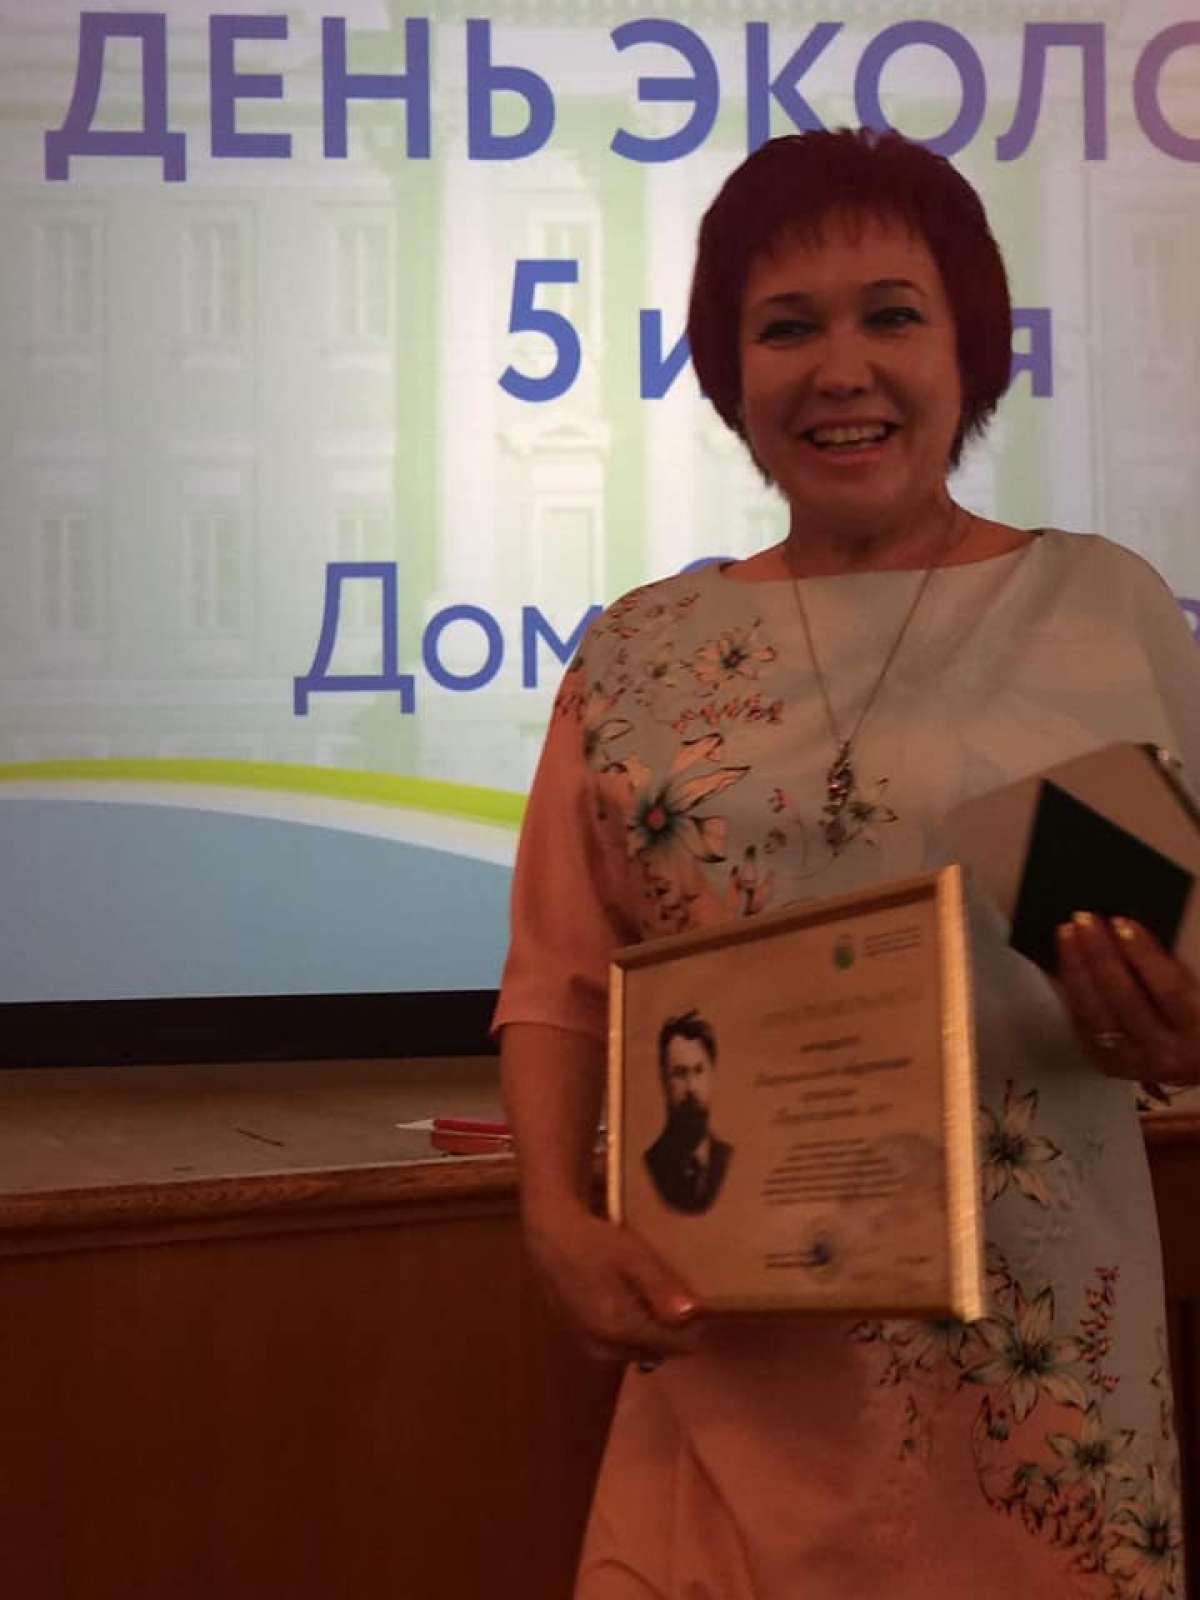 МОО "Природоохранный союз" получил золотой сертификат в номинации "Экологической образование"